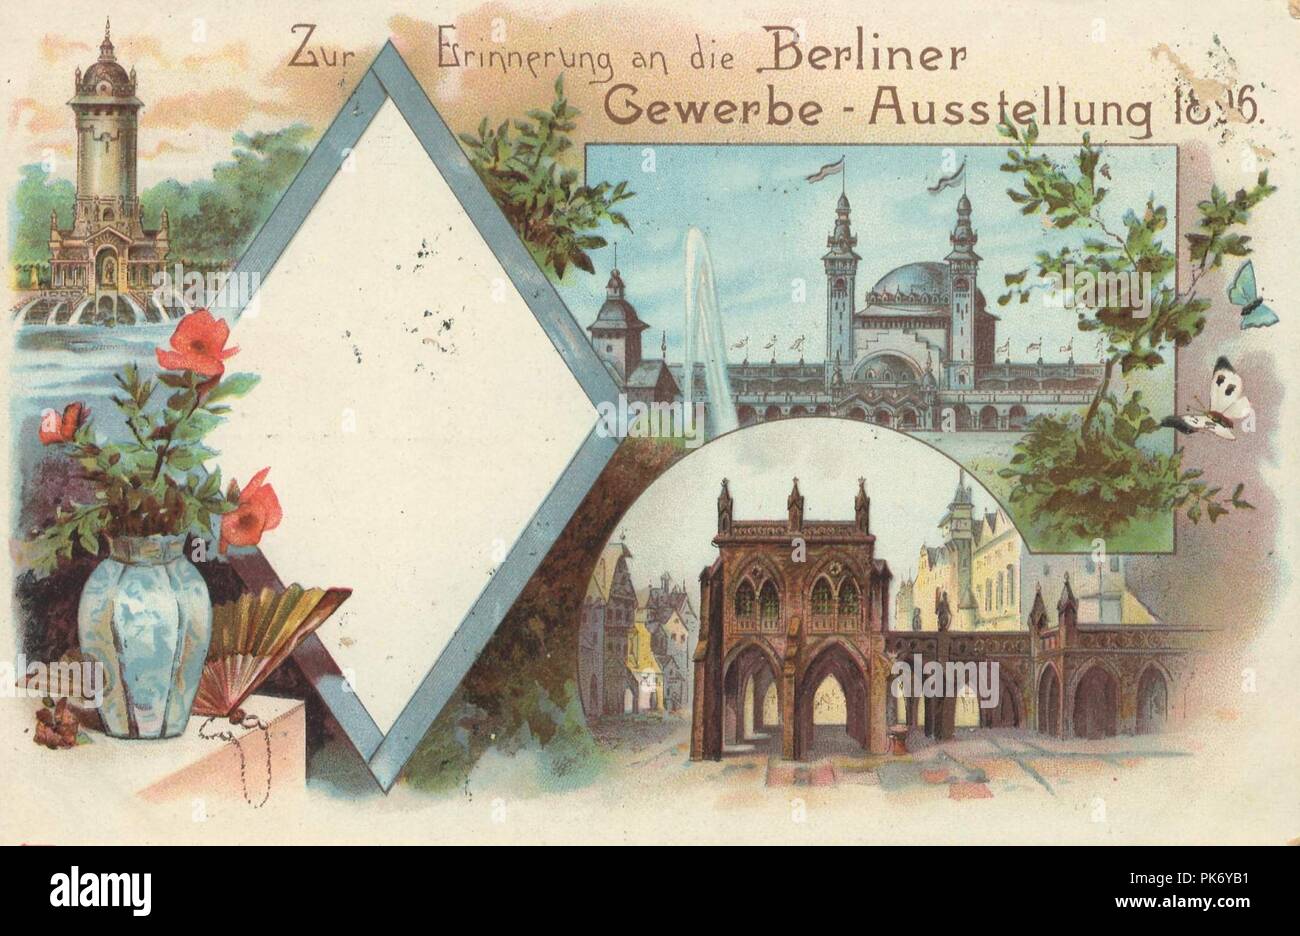 Berlin, Treptow, Gewerbeausstellung 1896, Erinnerung. Stock Photo